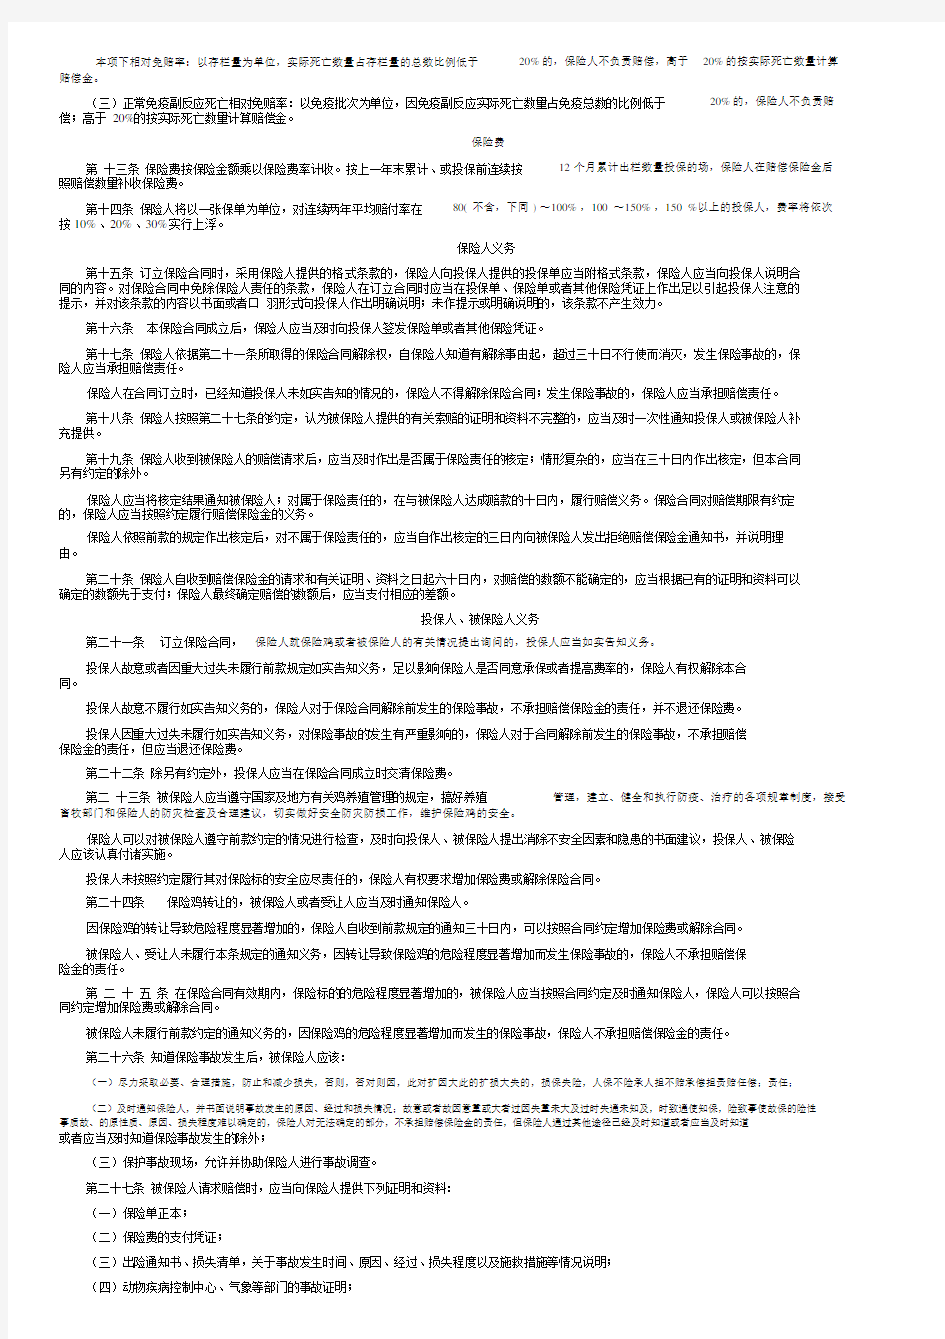 上海安信农业保险条款安信农业保险股份有限公司家禽养殖鸡保险条款2009版.doc